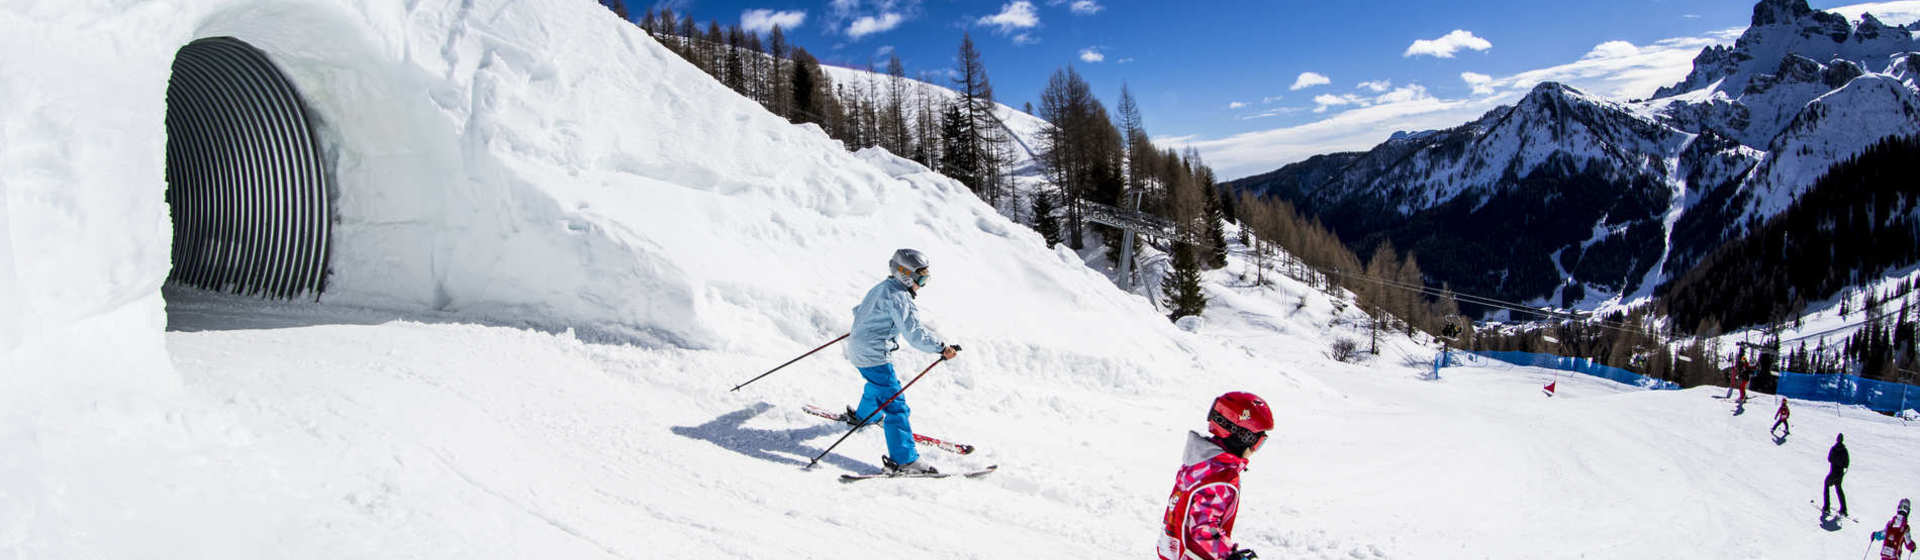 Arabba offre ancora Sciate indimenticabili sulle Dolomiti